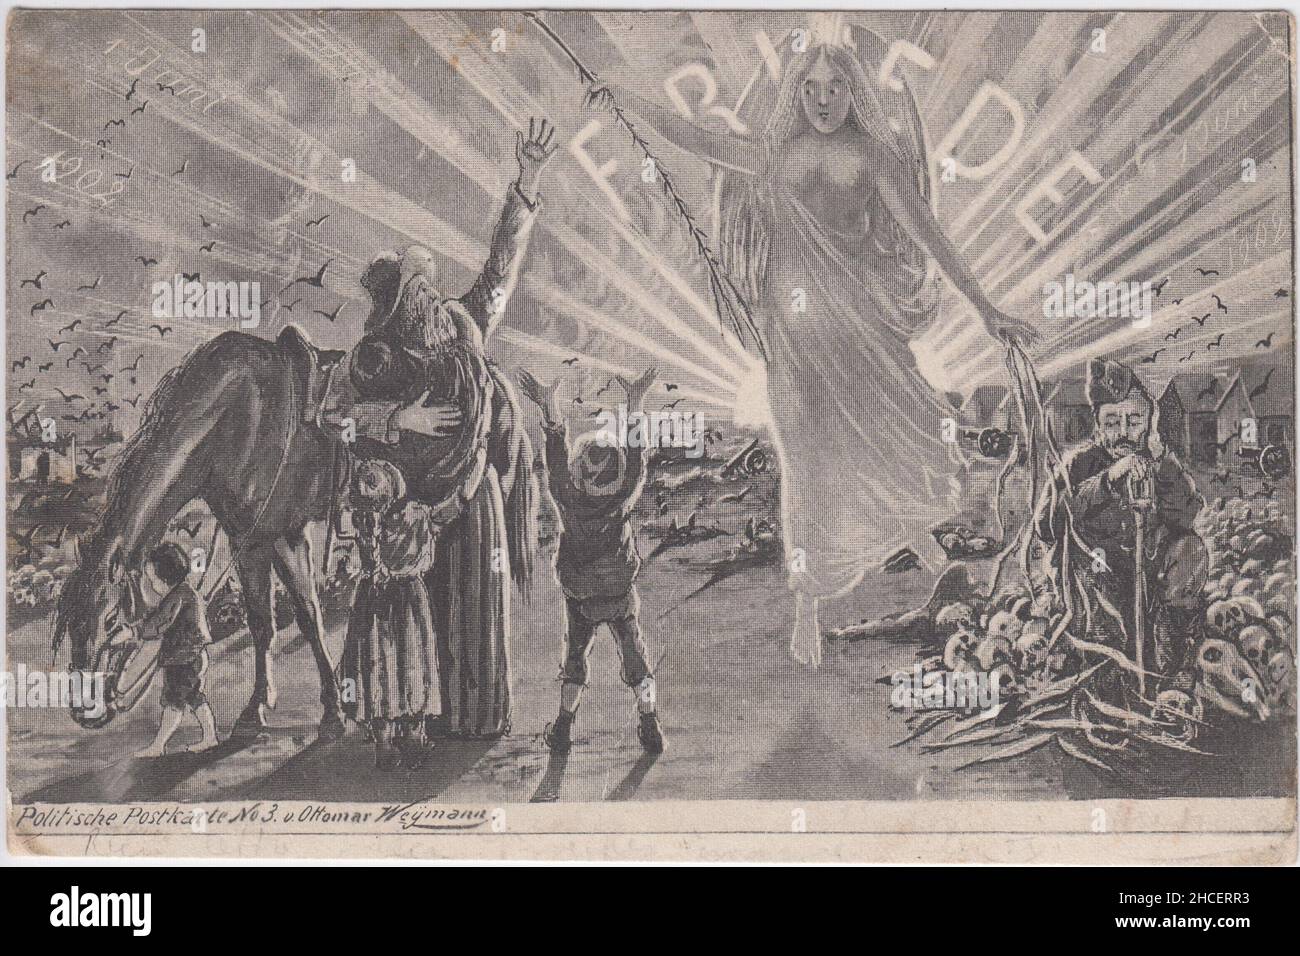 'Friede' / paix : carte postale allemande marquant la fin de la guerre des Boers.L'image montre un ange de la paix salué par une famille Boer debout à côté de son cheval.Un soldat britannique s'agenouille entouré d'os, et le paysage en arrière-plan a été blagé par la guerre et a des corneilles survolant des villages détruits.De la série Politische Postkarte (n°3) Ottomar Weymann Banque D'Images